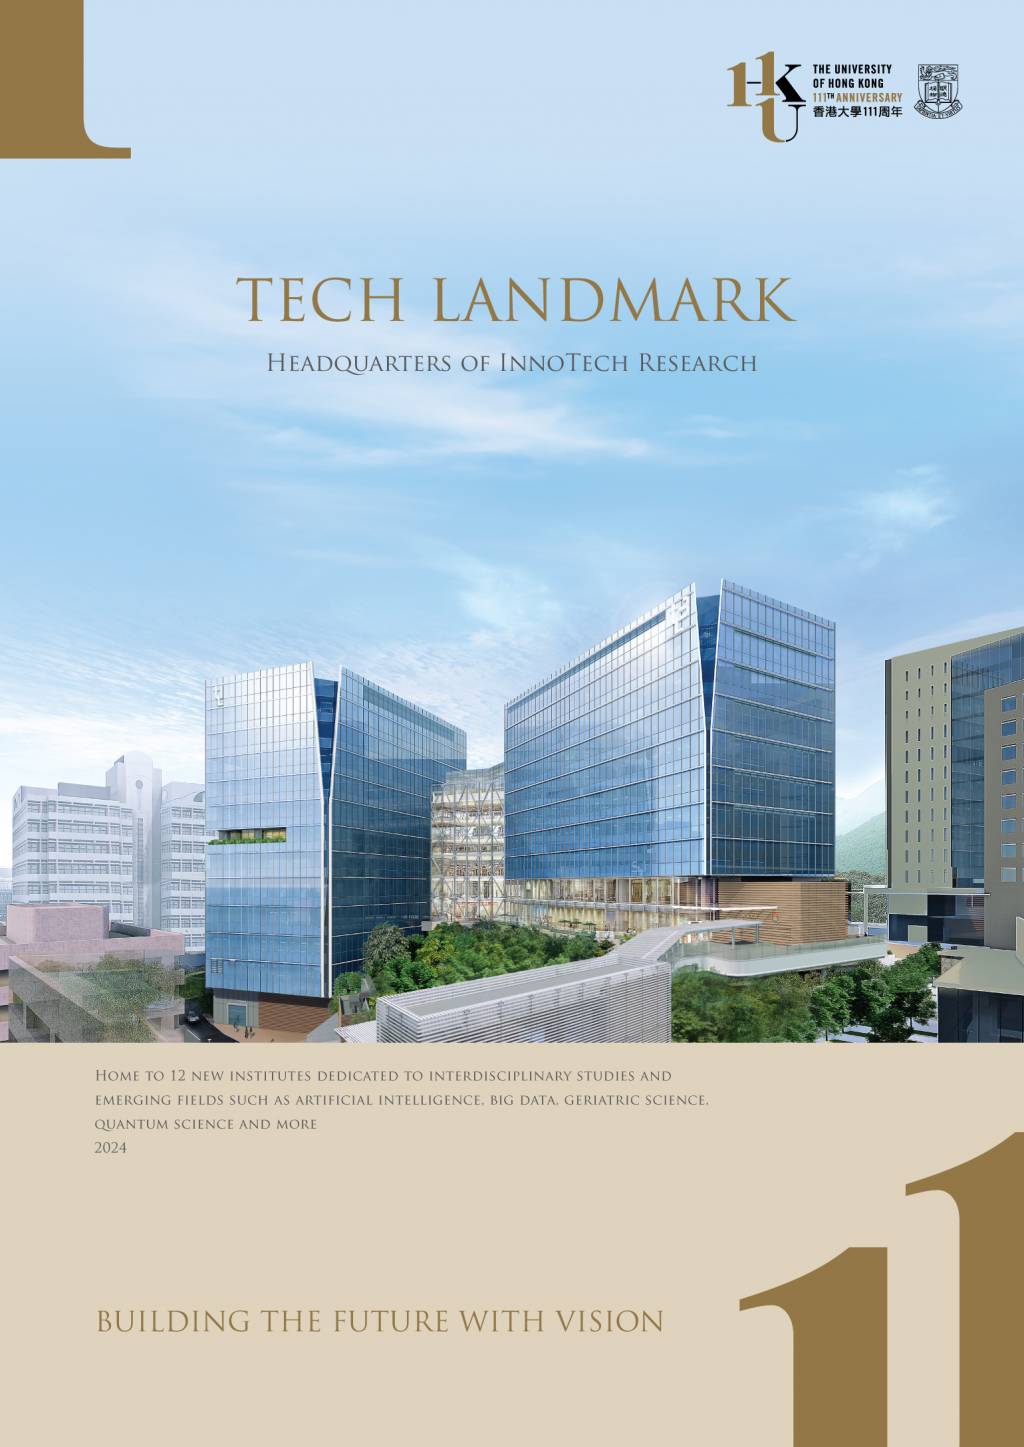 Tech Landmark - Headquarters of InnoTech Research